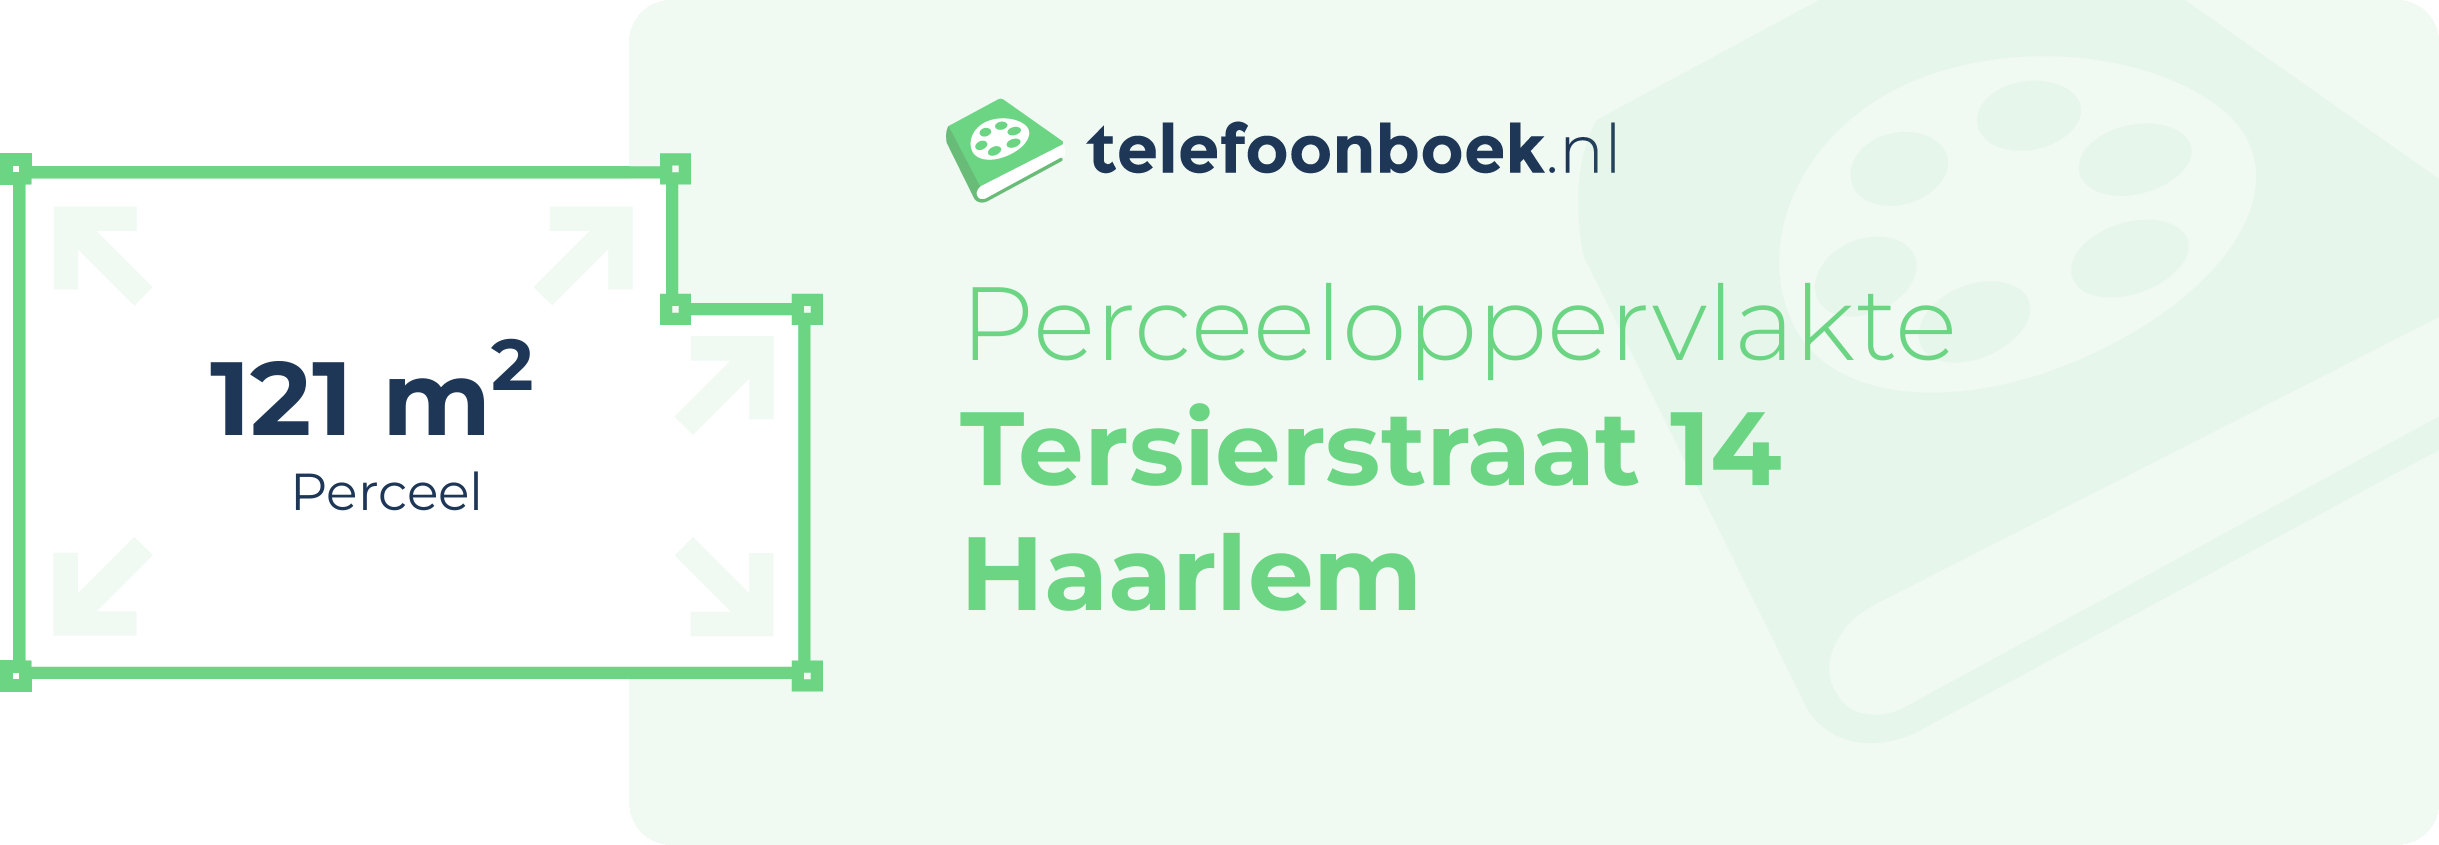 Perceeloppervlakte Tersierstraat 14 Haarlem